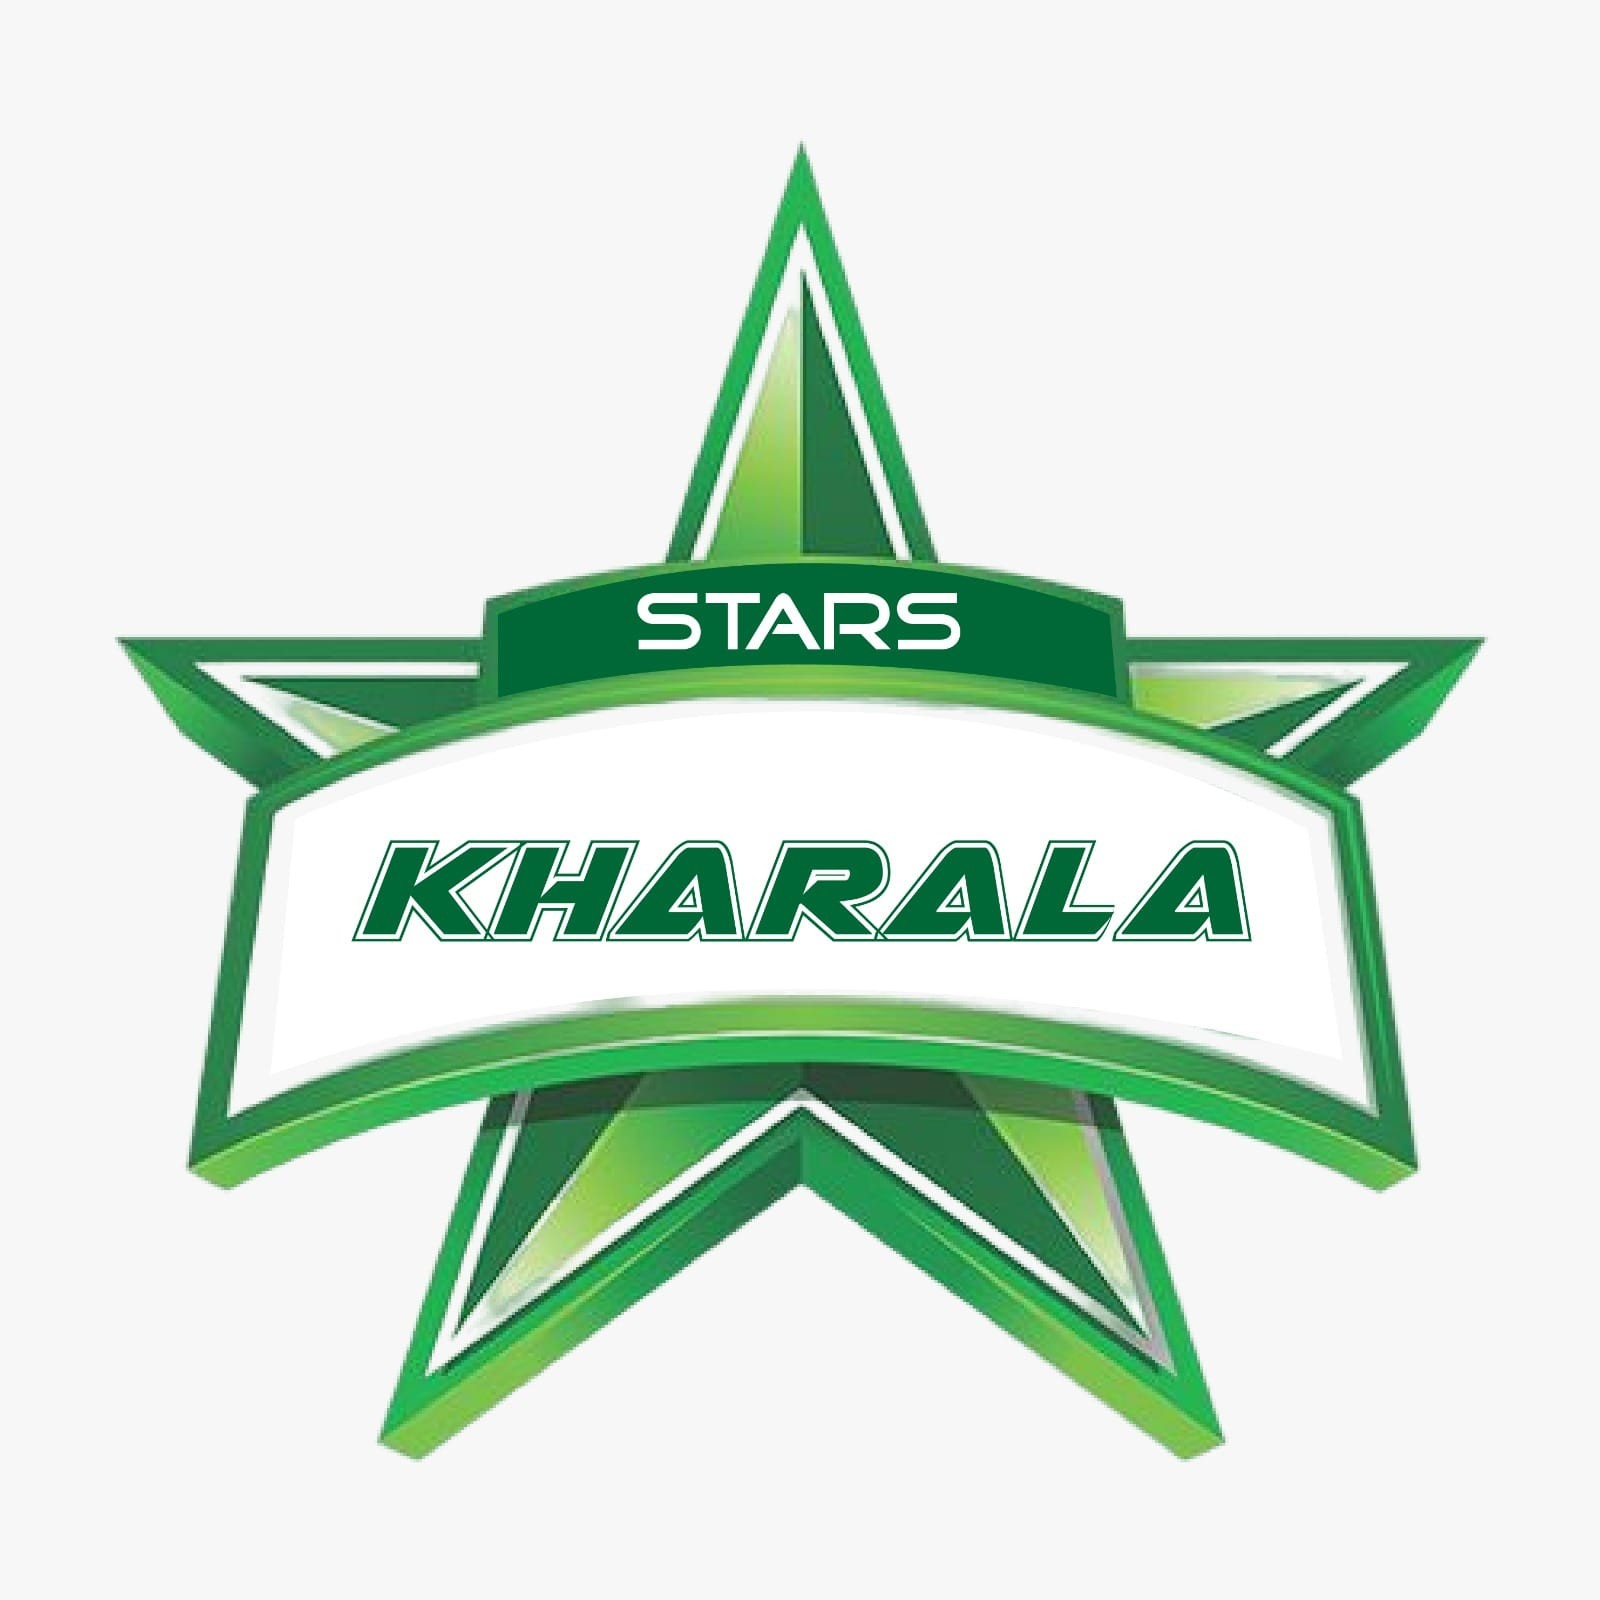 Kharala Star